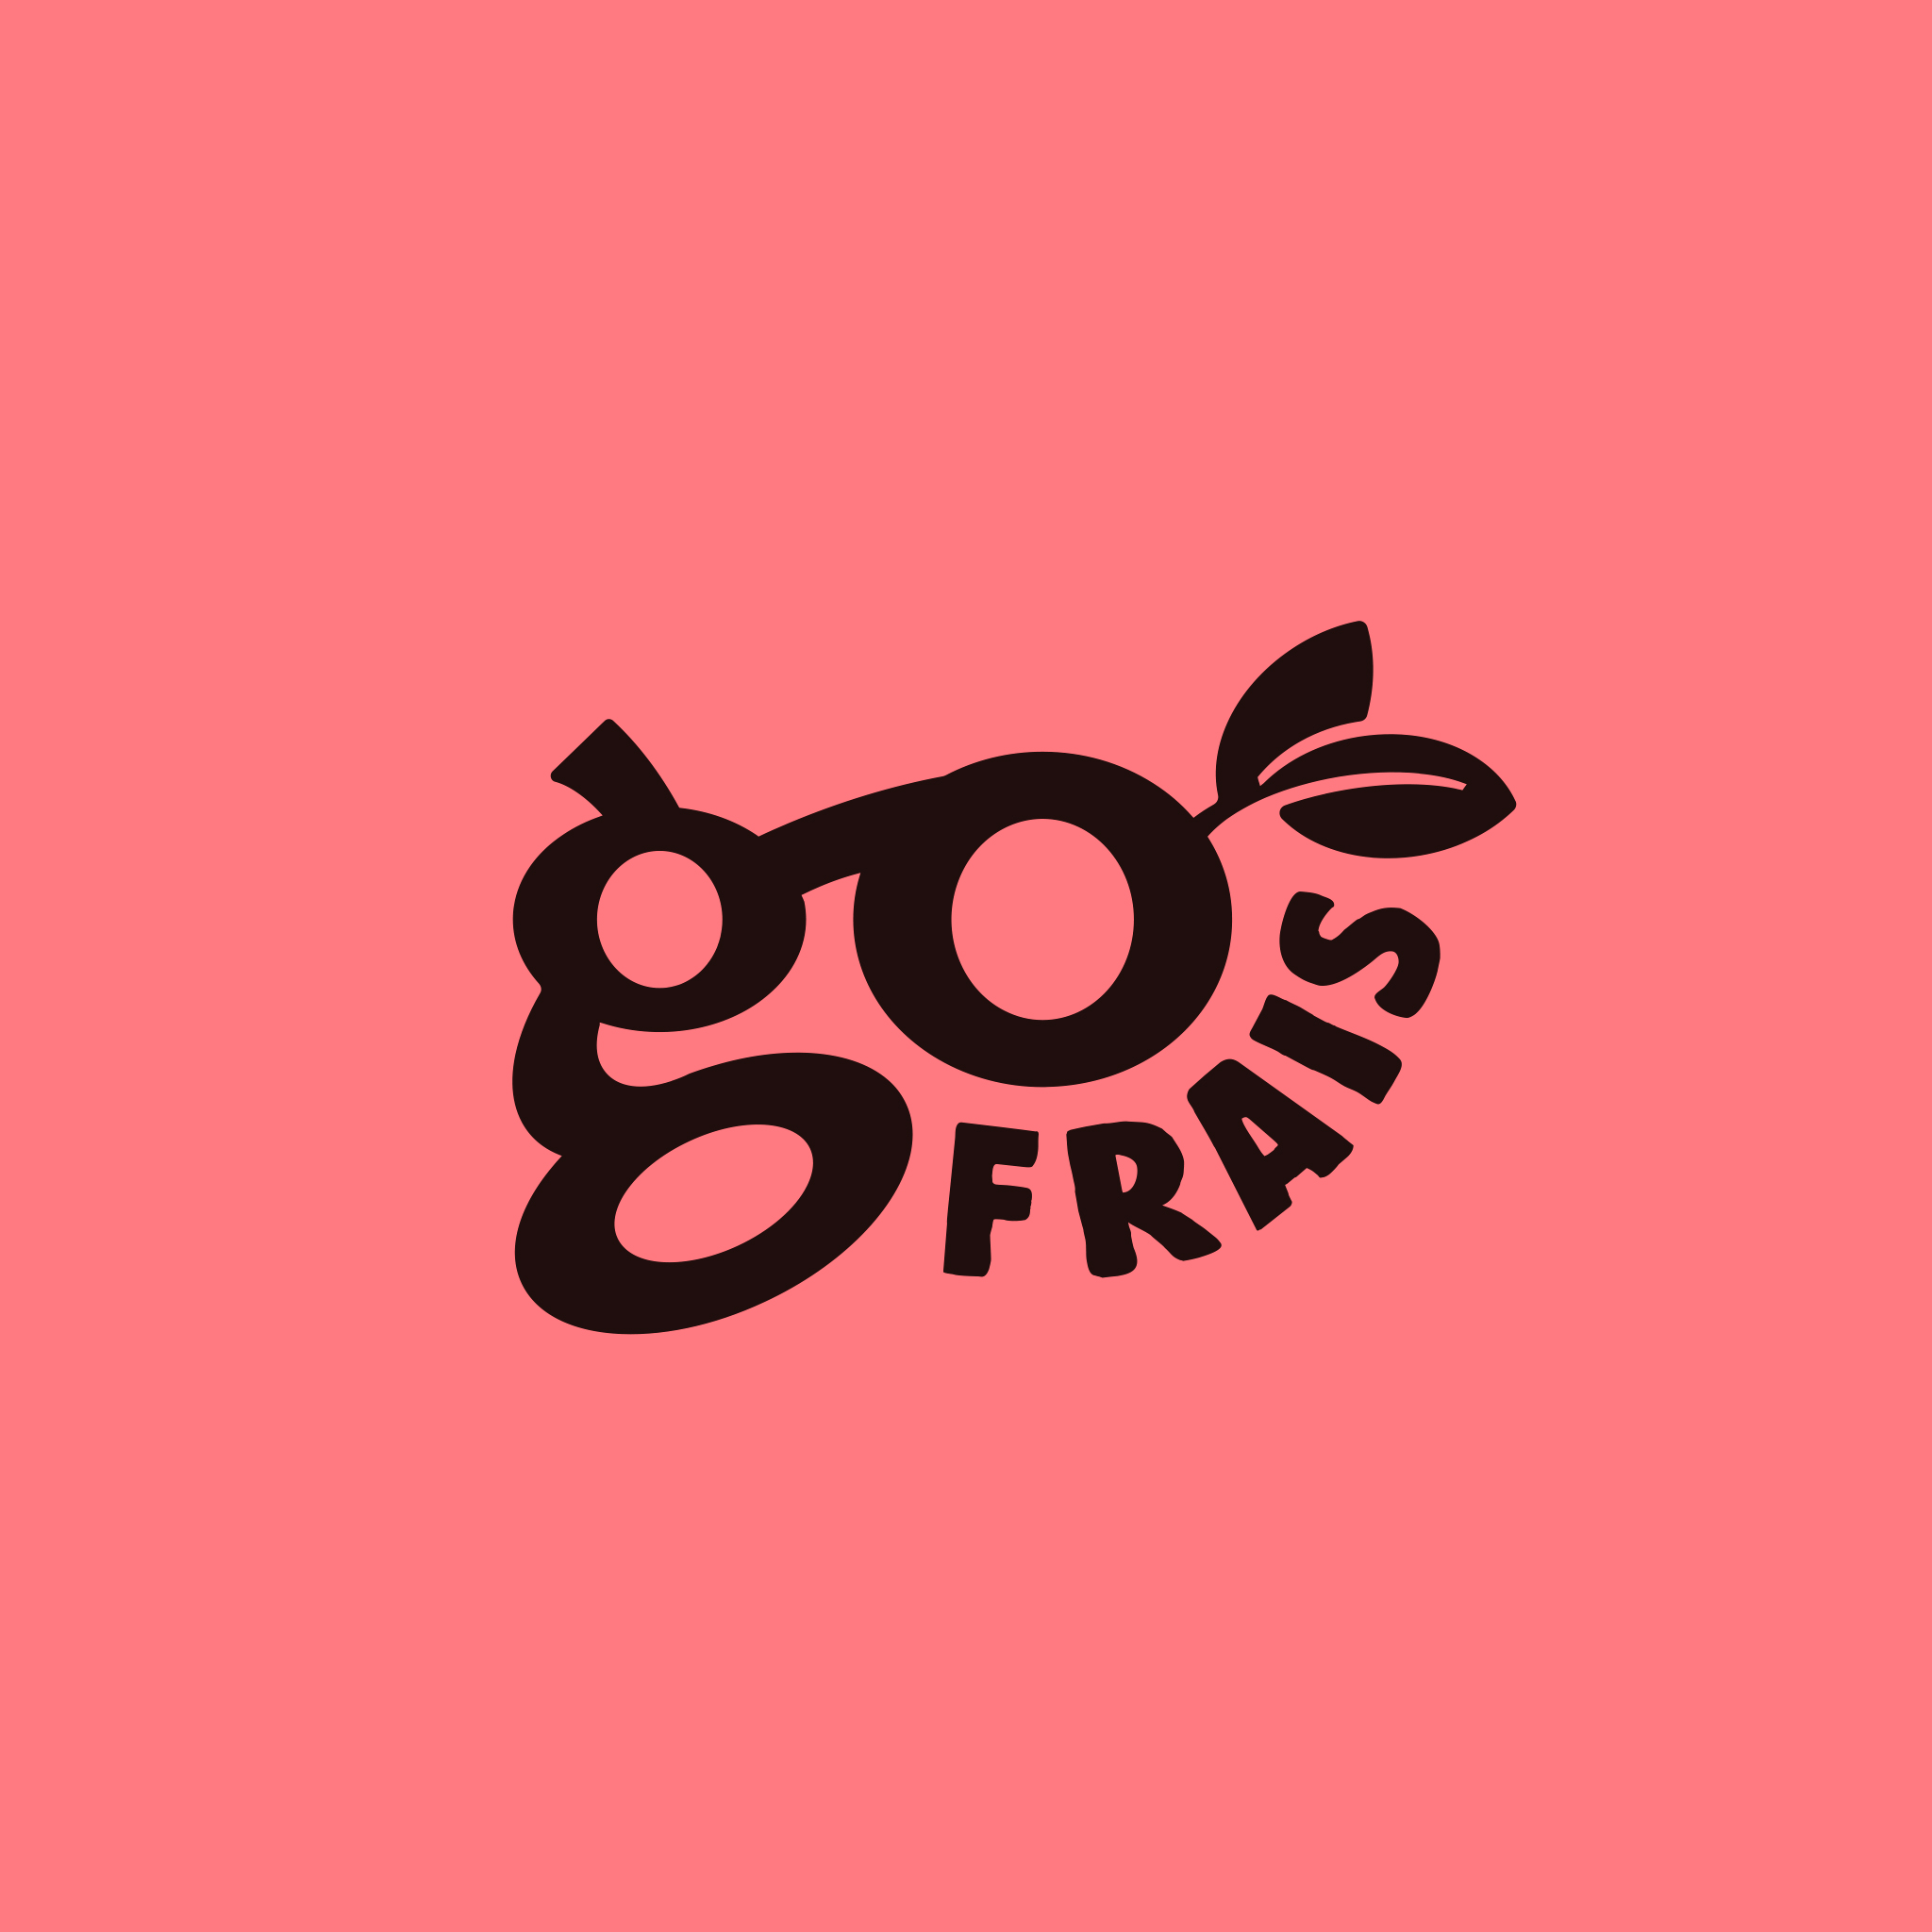 autograff-design-graphique-graphiste-toulouse-france-logo-go-frais-street-food-rose